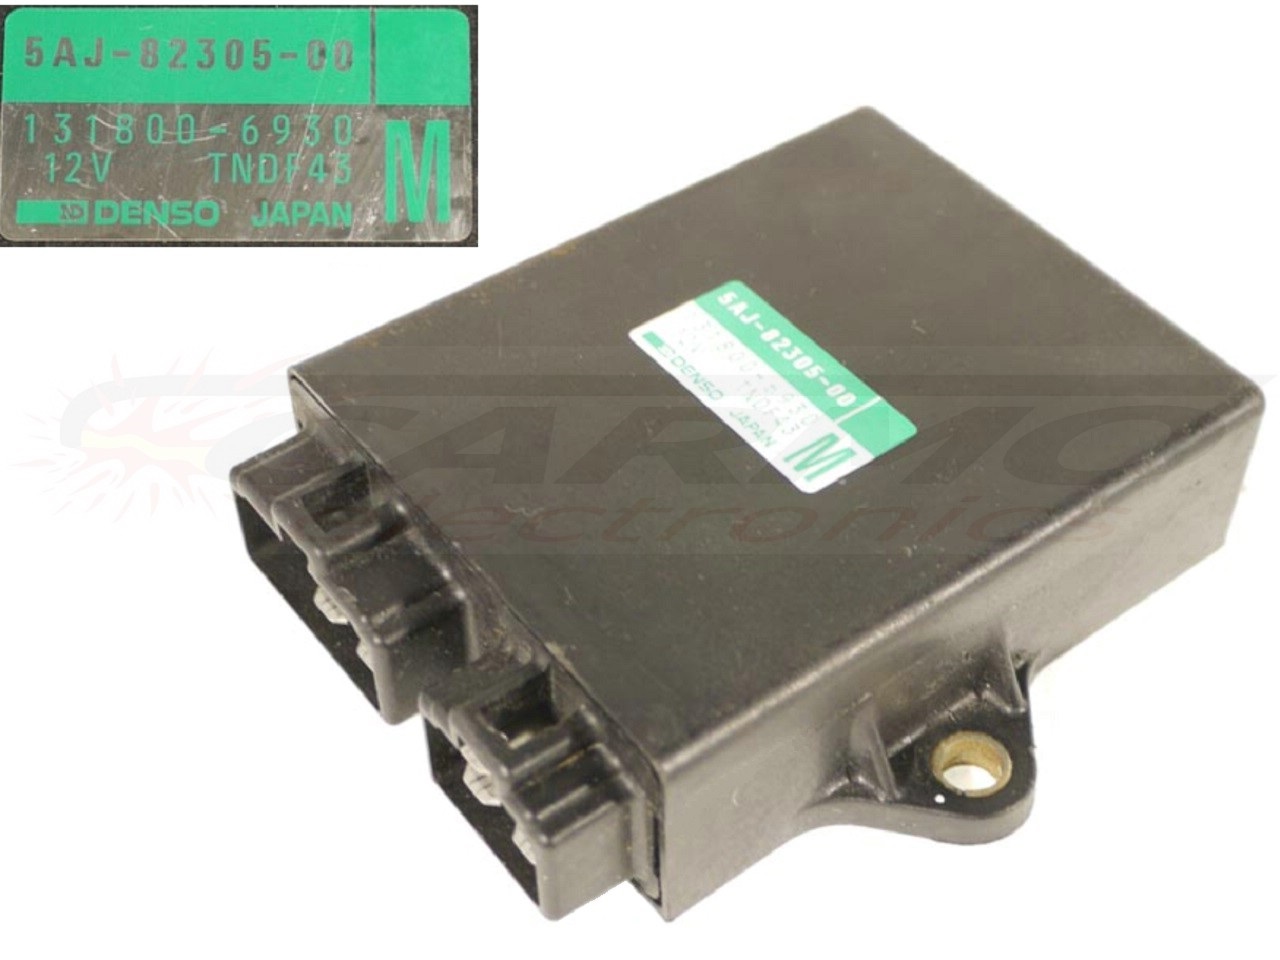 XV125 Virago igniter ignition module CDI TCI Box (5AJ-82305-00, 131800-6930)